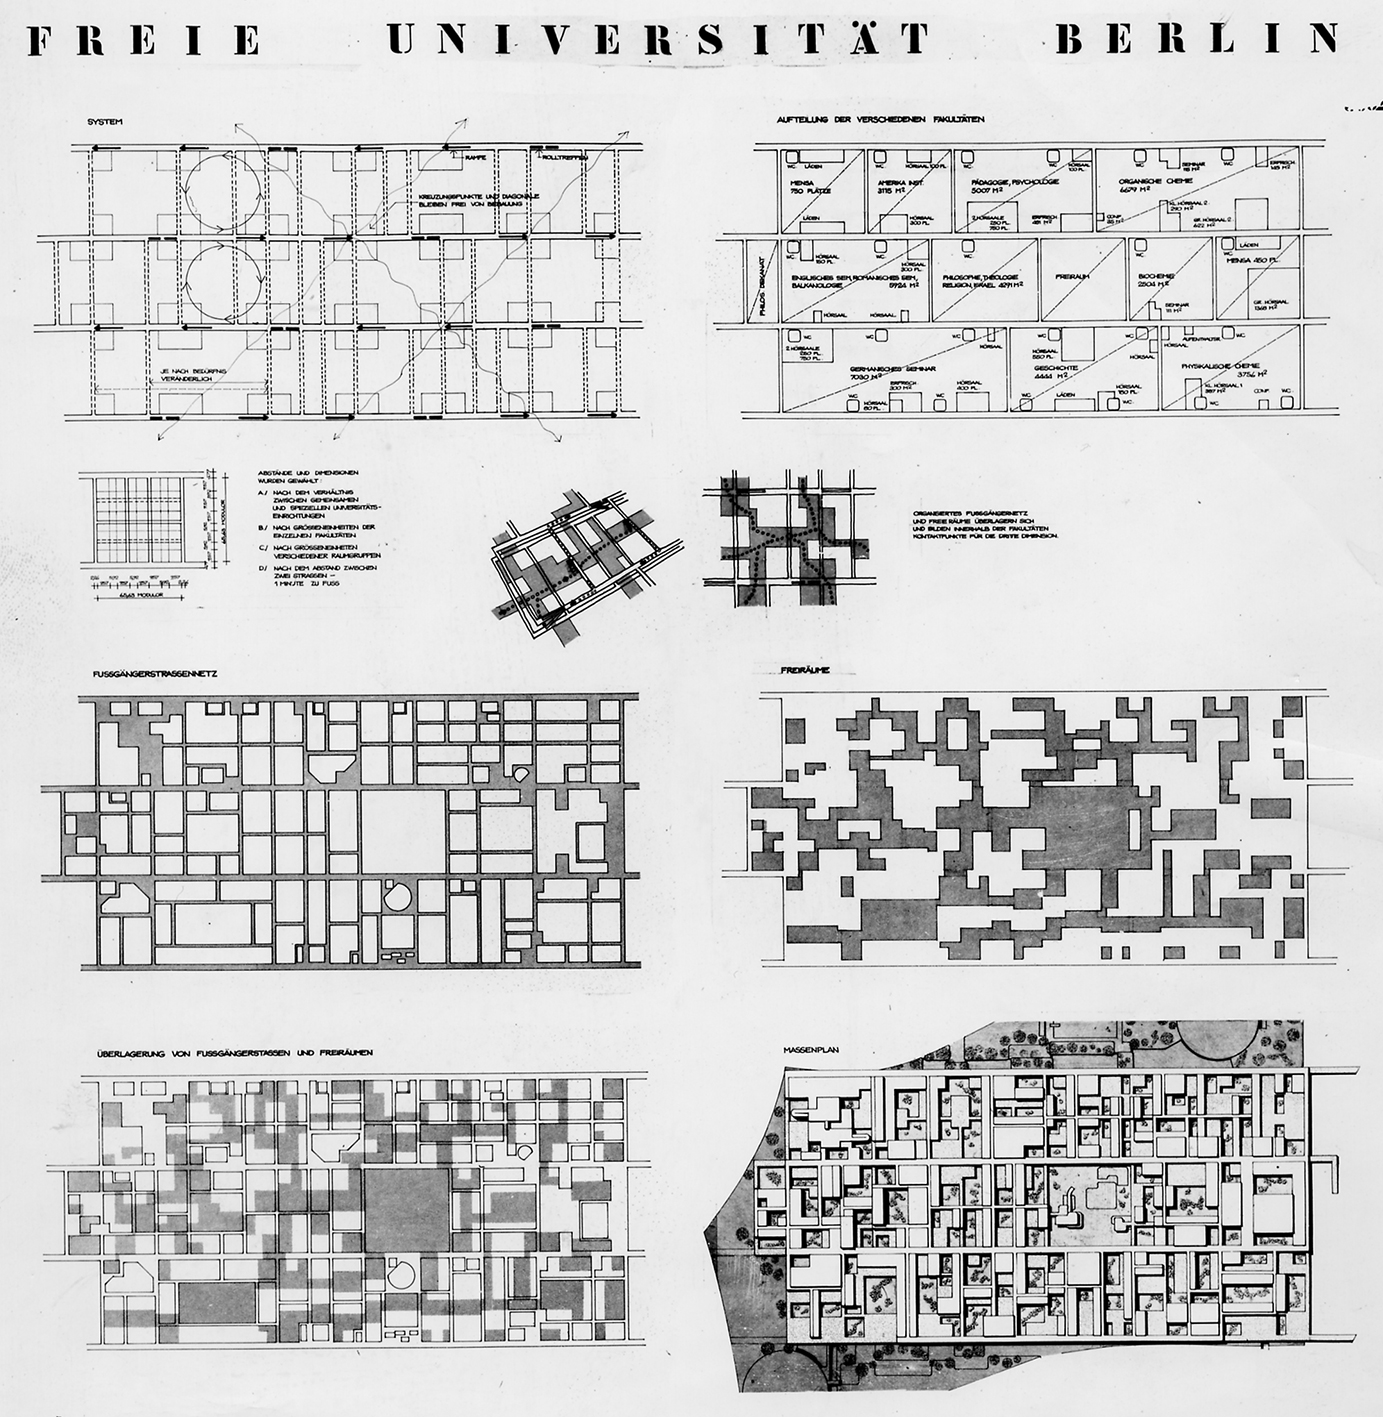 Université libre, Berlin, 1965-1973 (G. Candilis, A. Josic, S. Woods et M. Schiedhelm, arch.).